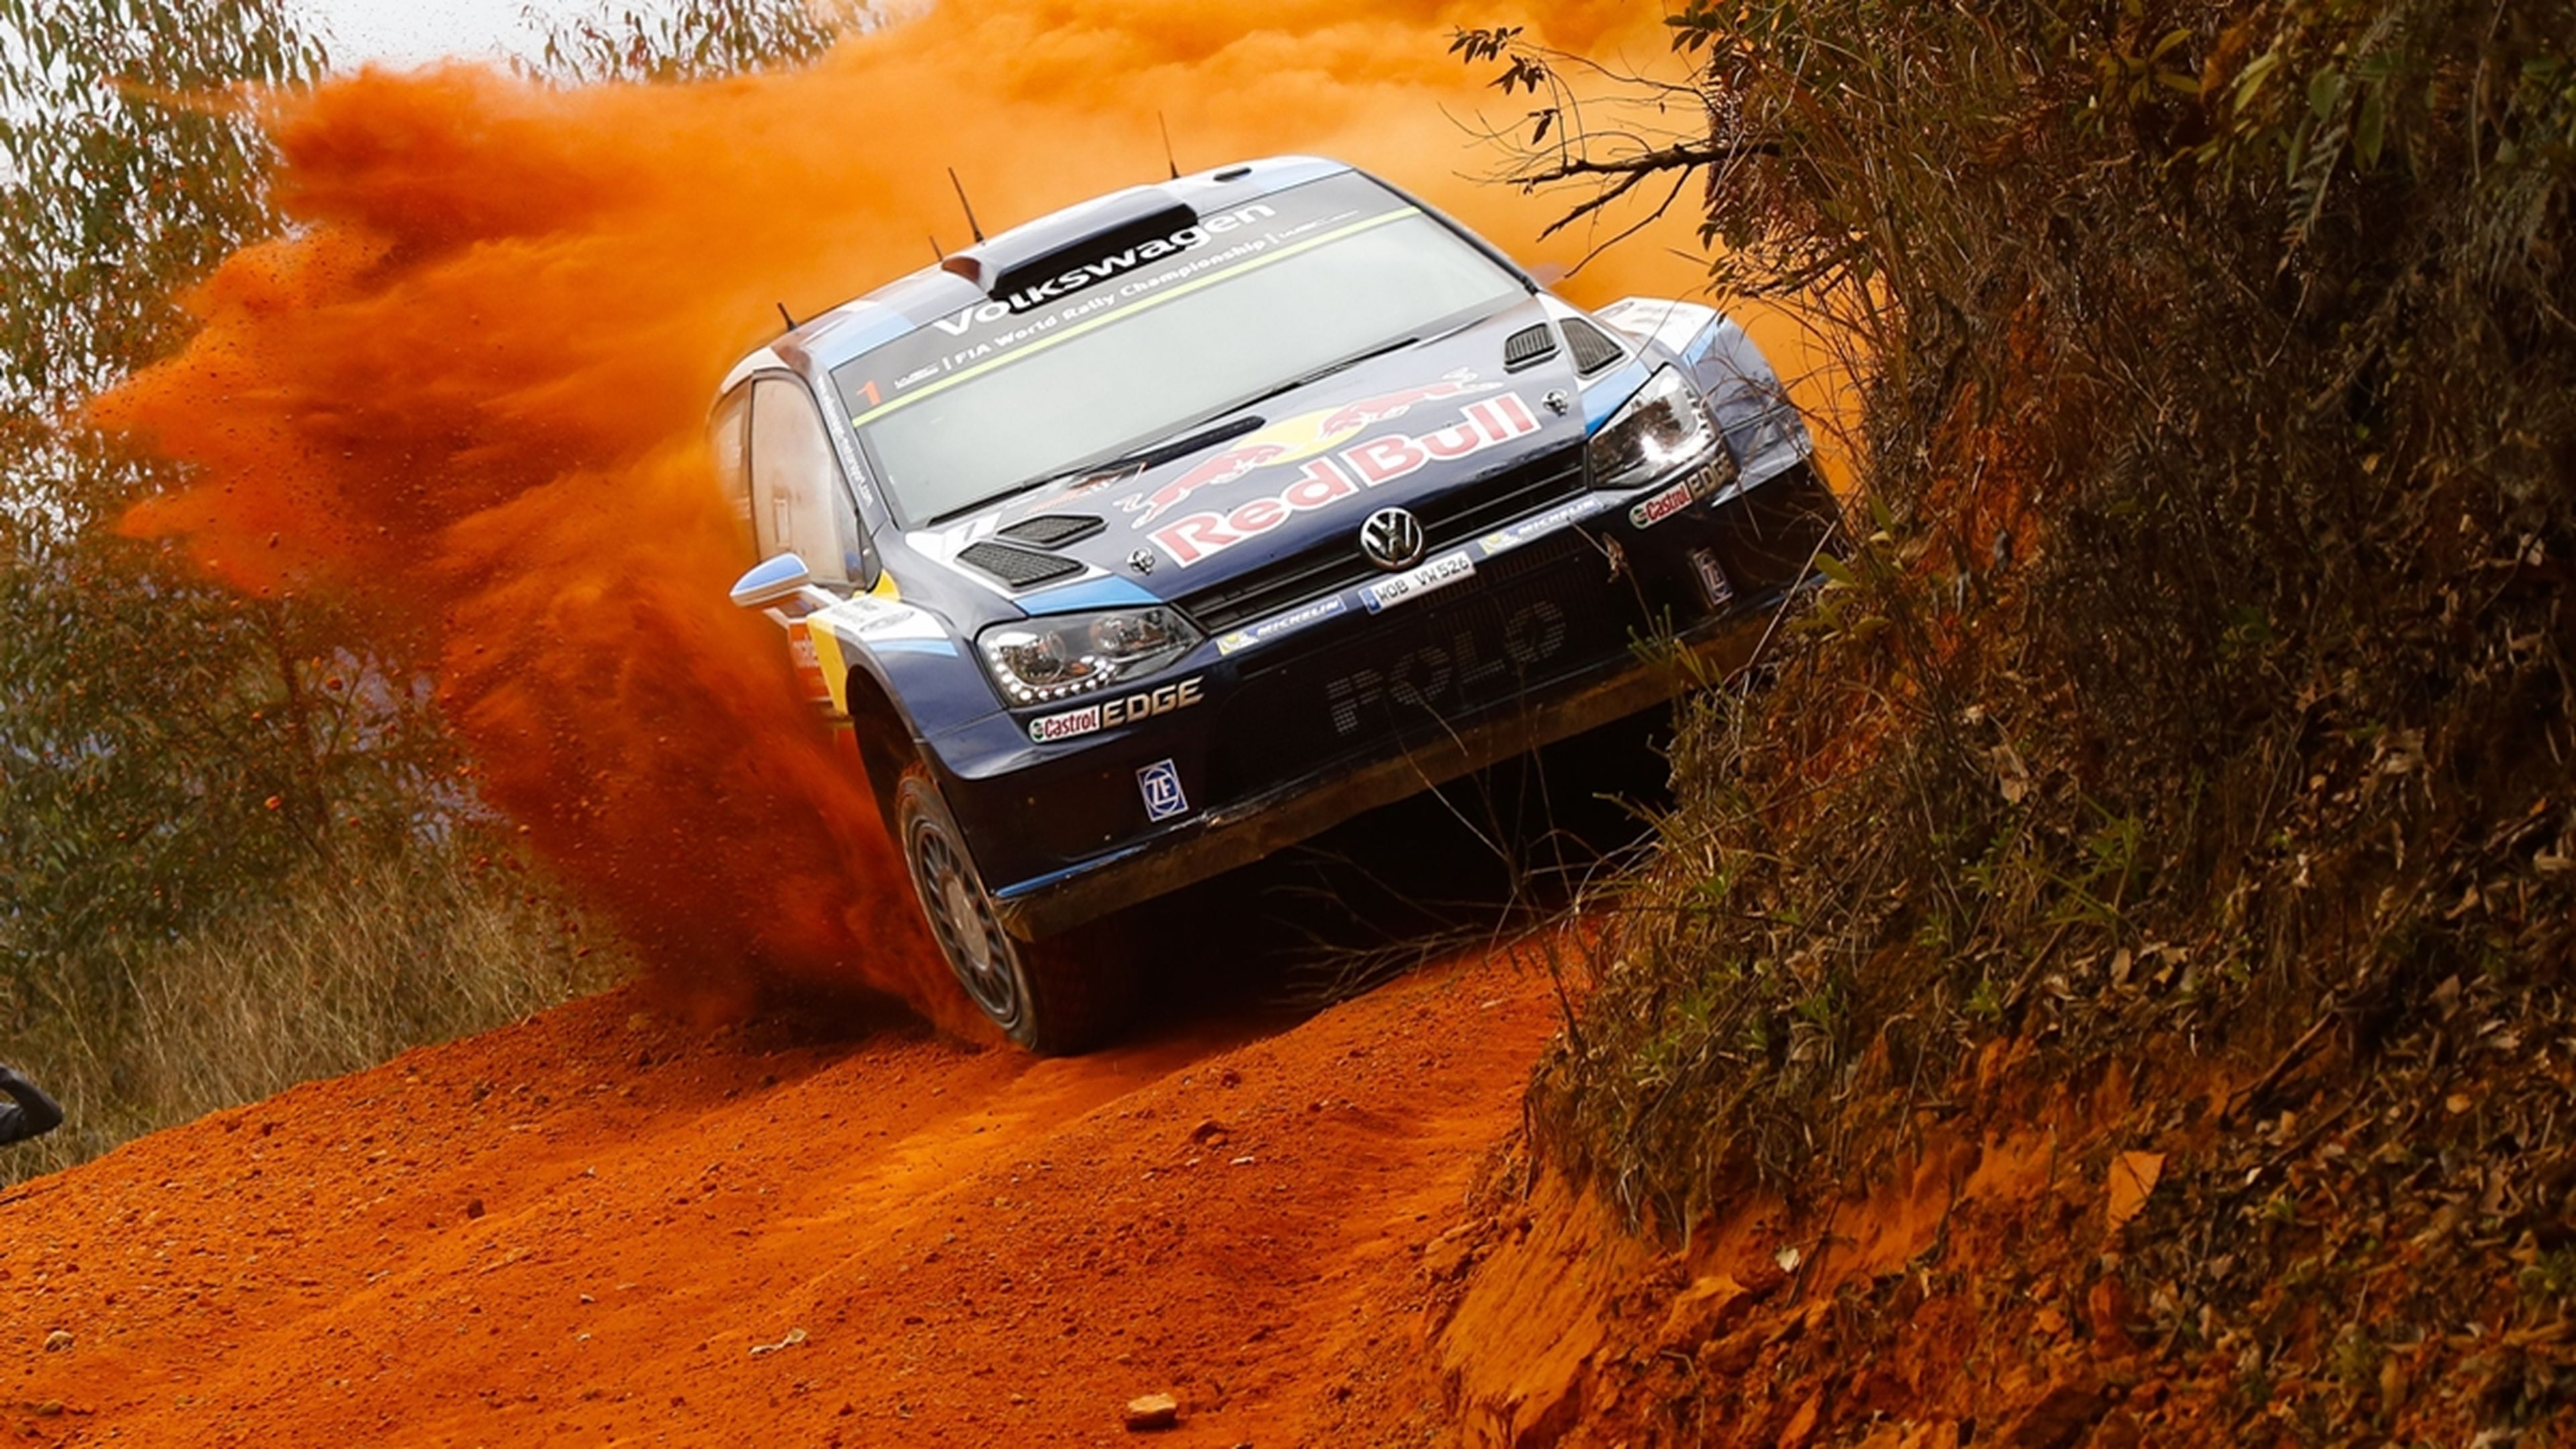 WRC 2015, Rally de Australia: previo, tramos y horarios